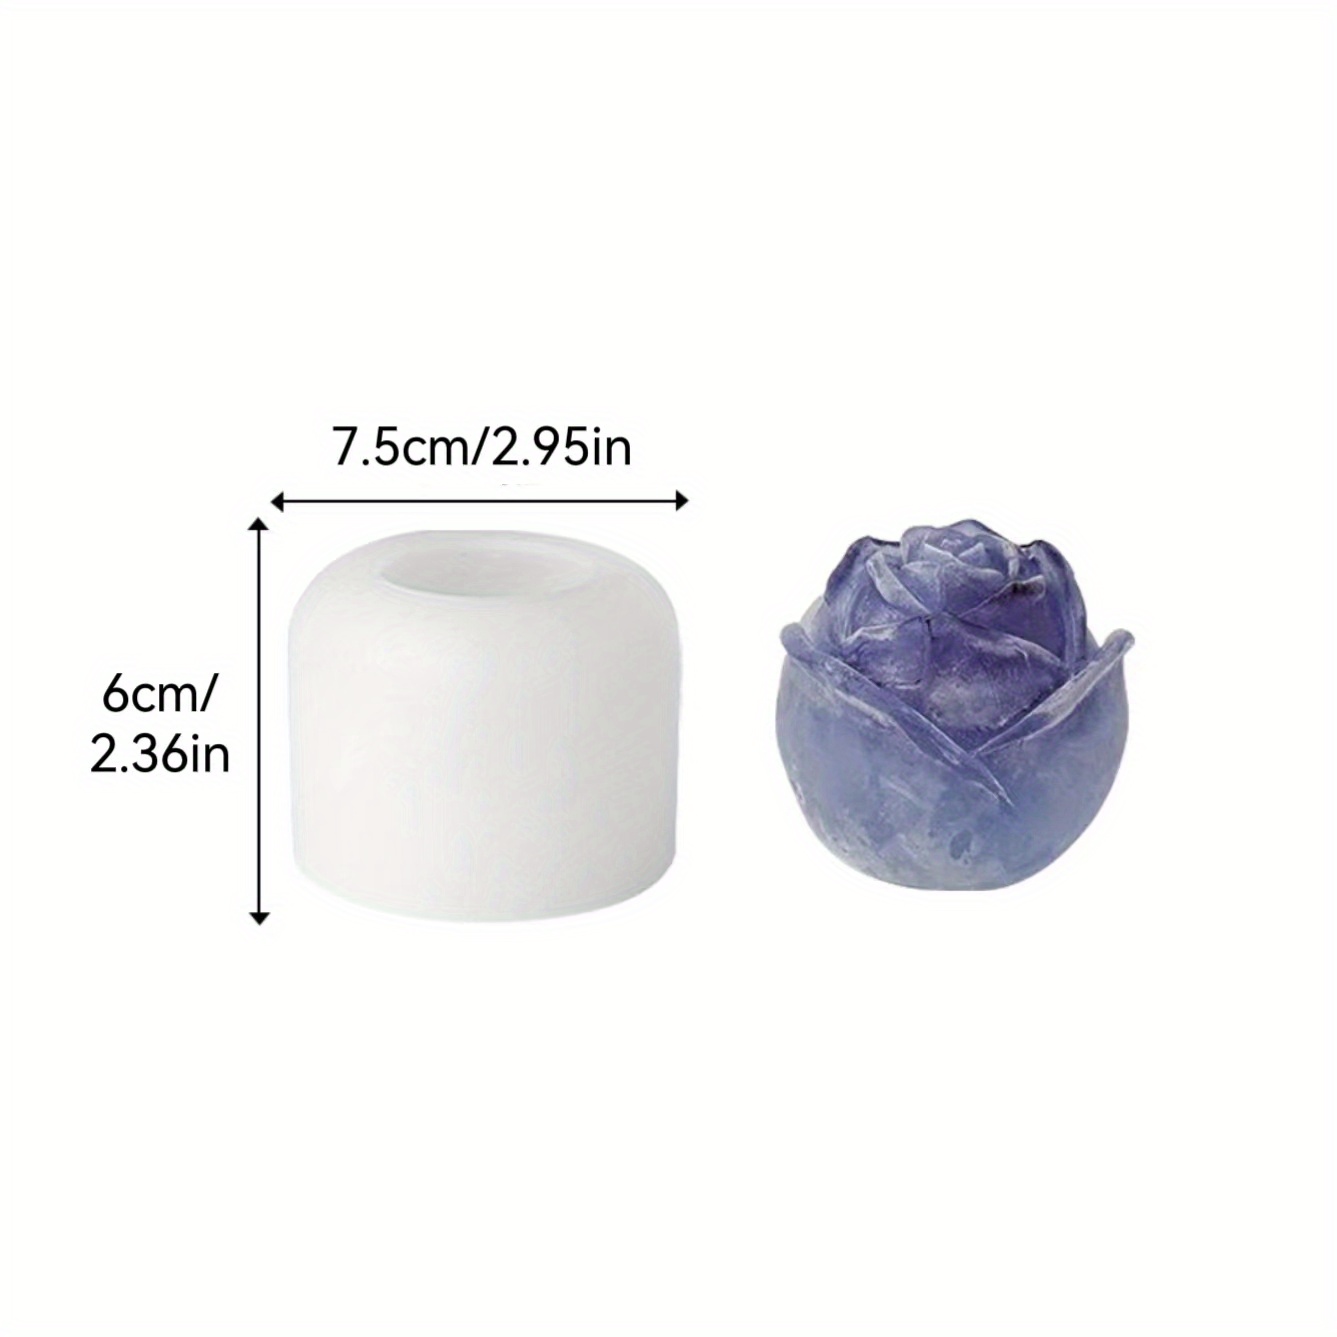 3D Silicone Ice Cube Shape Rose Shape Icecream Mold Freezer Ice Balls DIY  US